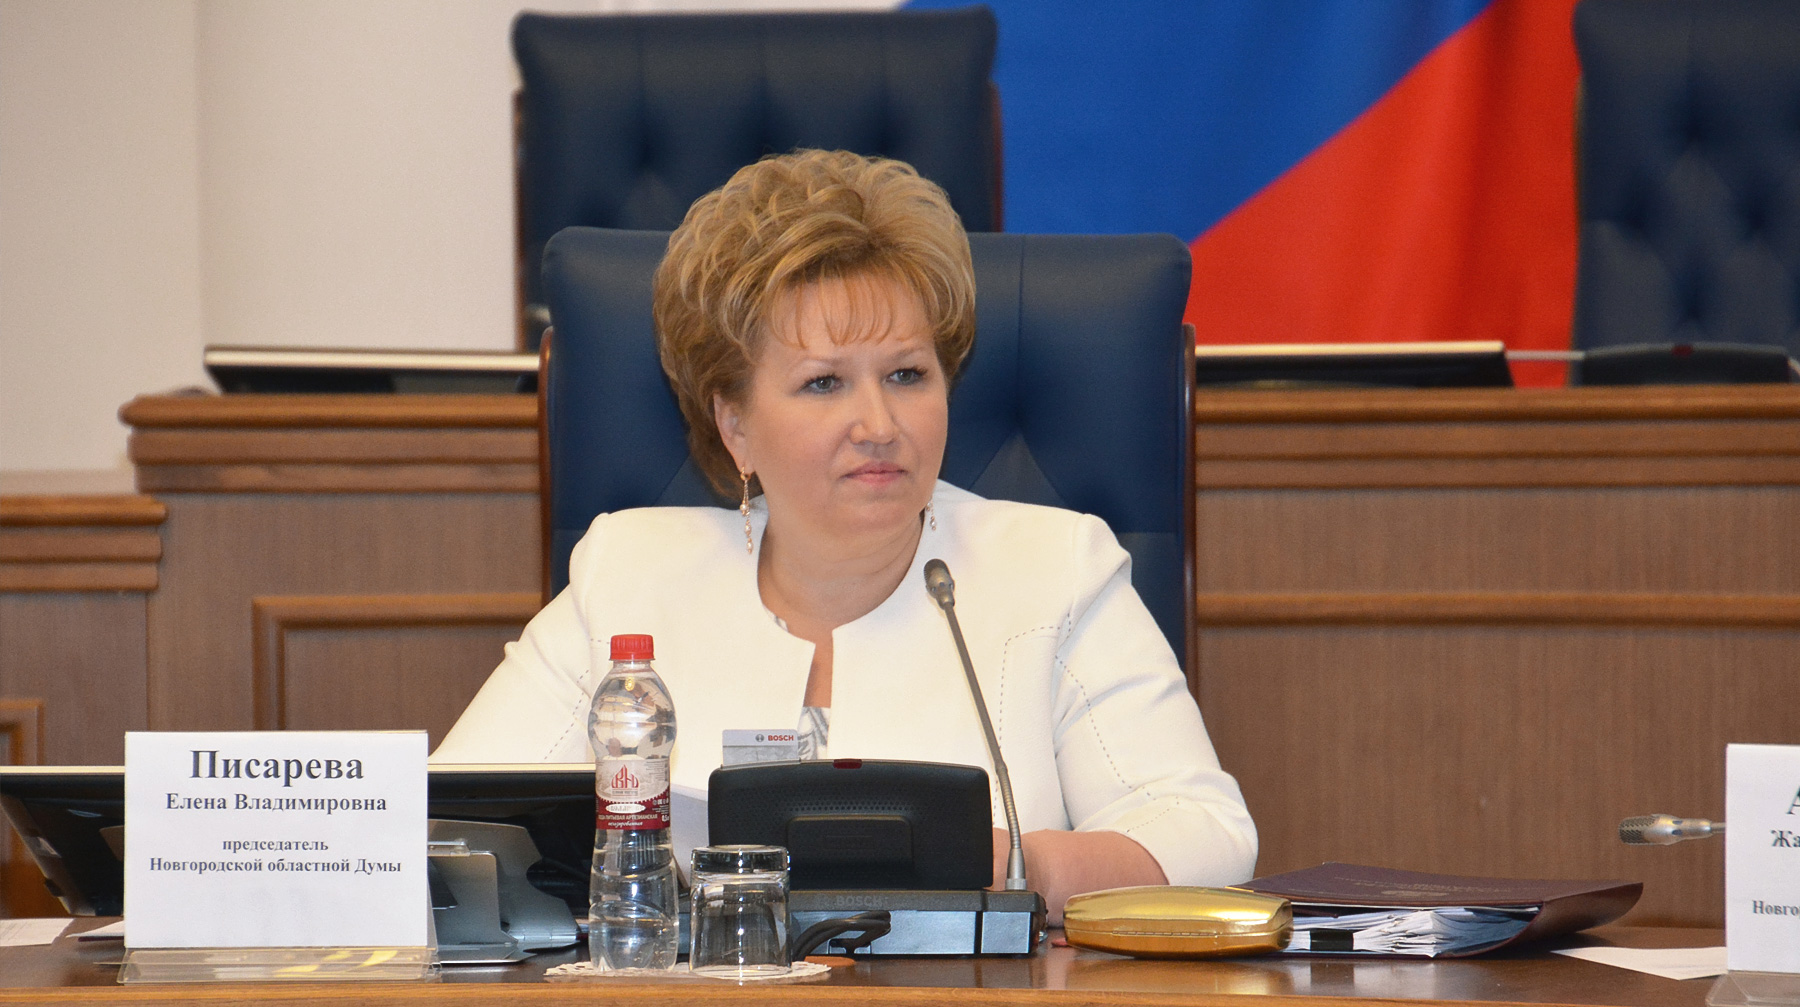 Елена Писарева сказала, что для мам дети в любом случае стоят на первом месте Председатель Новгородской областной Думы Елена Писарева